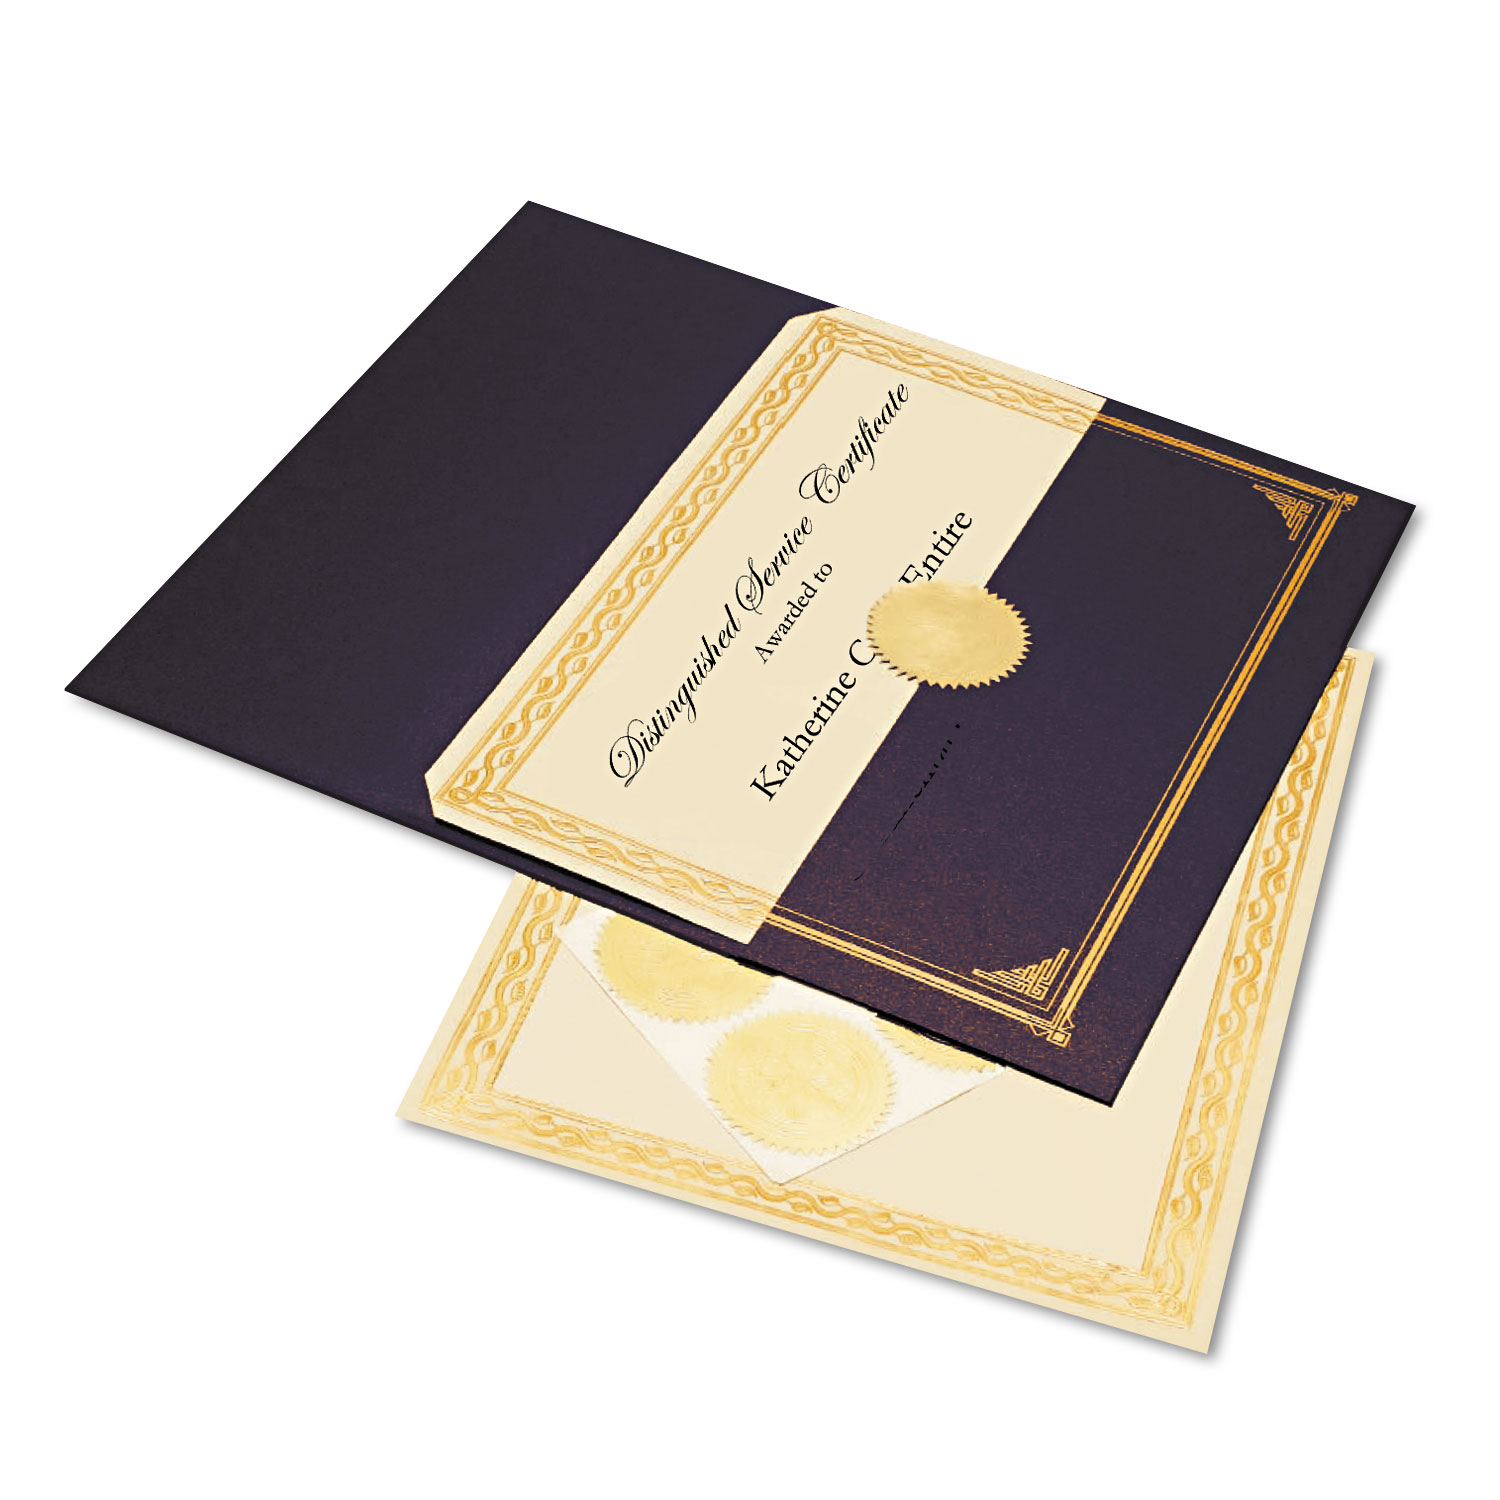  Geographics 47481 Ivory/Gold Foil Embossed Award Cert. Kit, Blue Metallic Cover, 8-1/2 x 11, 6/KIt (GEO47481) 